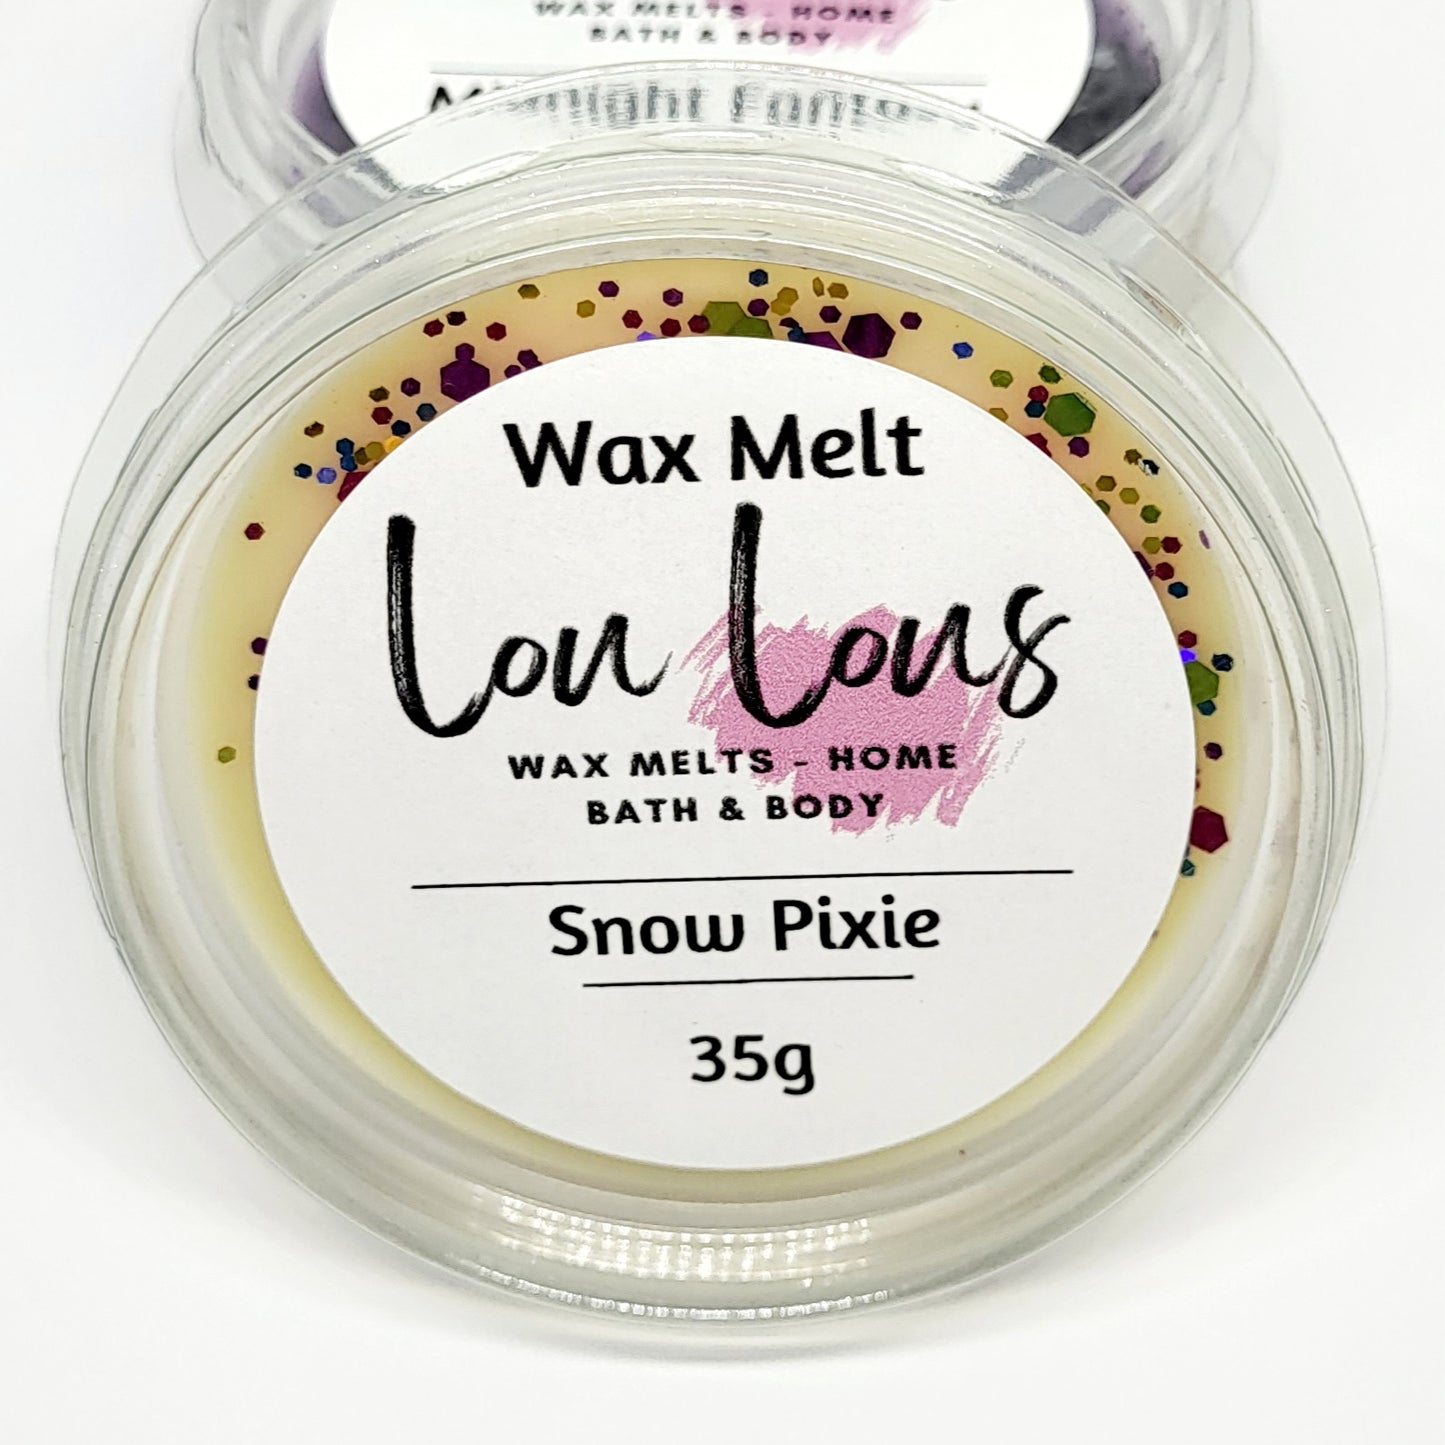 Snow Pixie Wax Melt Pot